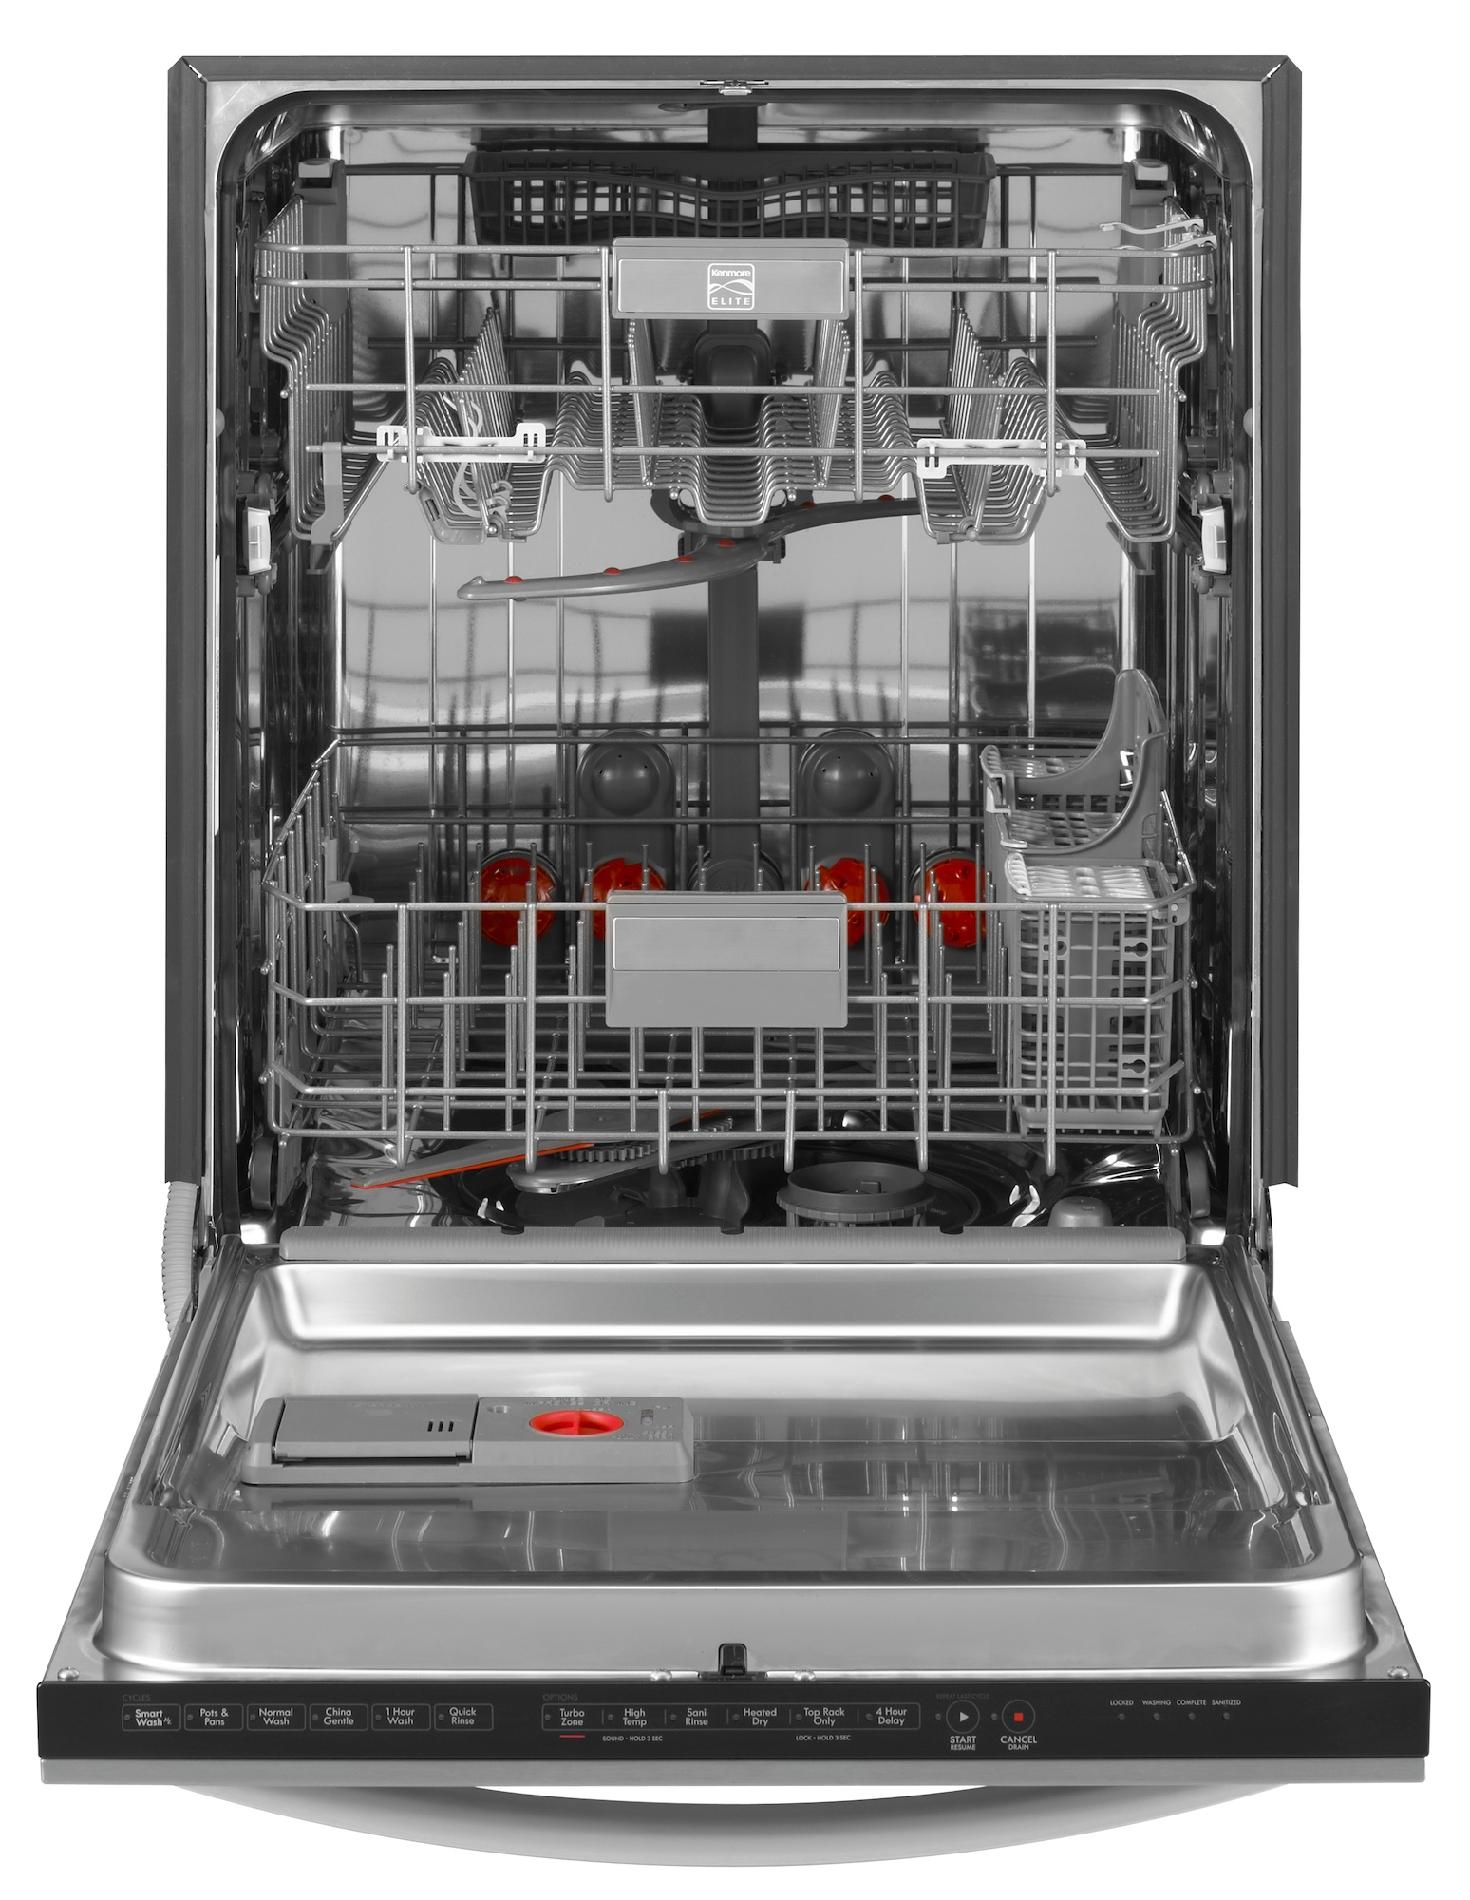 kenmore black stainless dishwasher